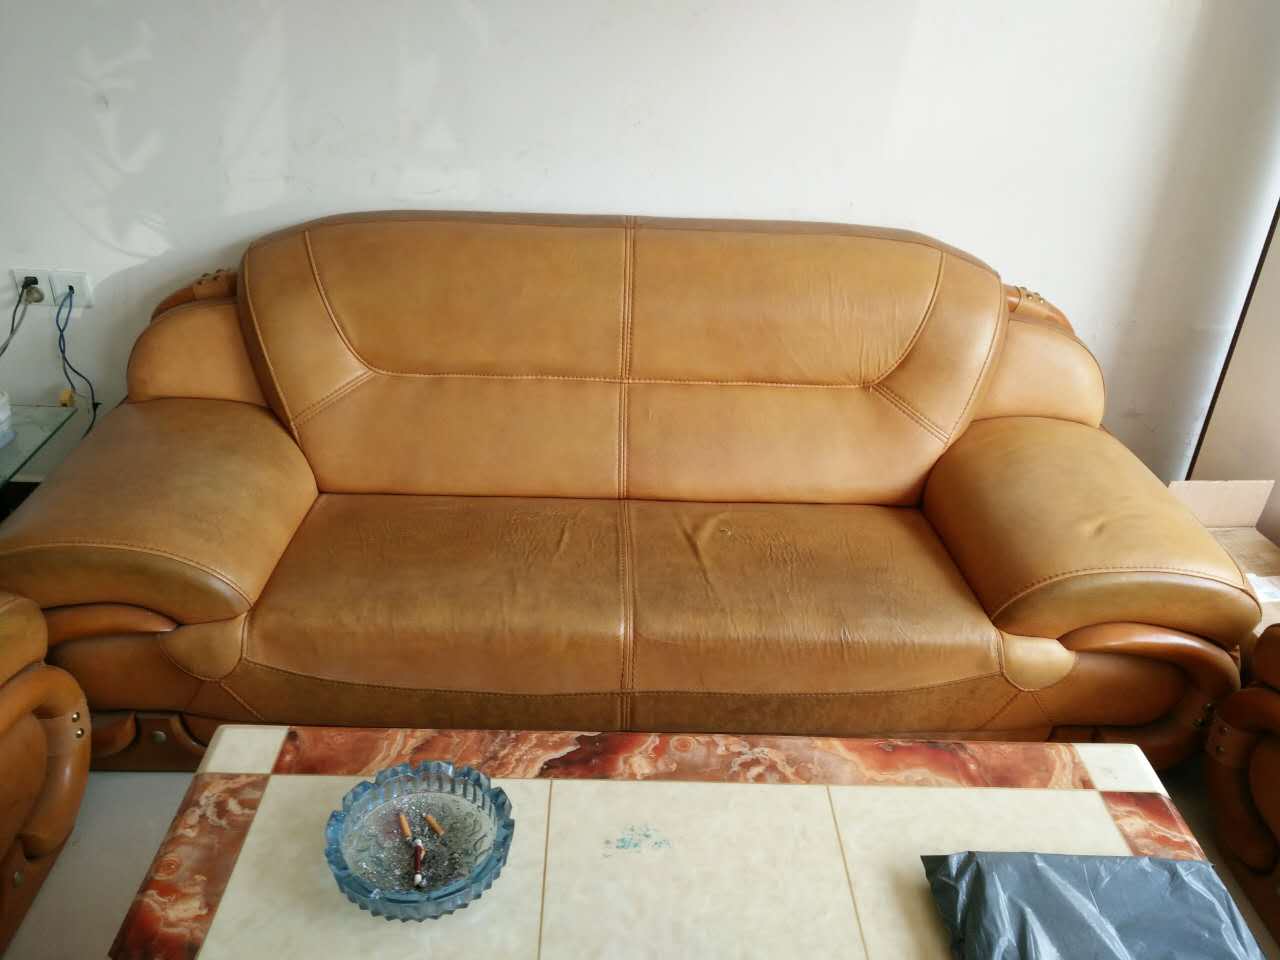 2200元买的新沙发布艺沙发三天竟然就坏了